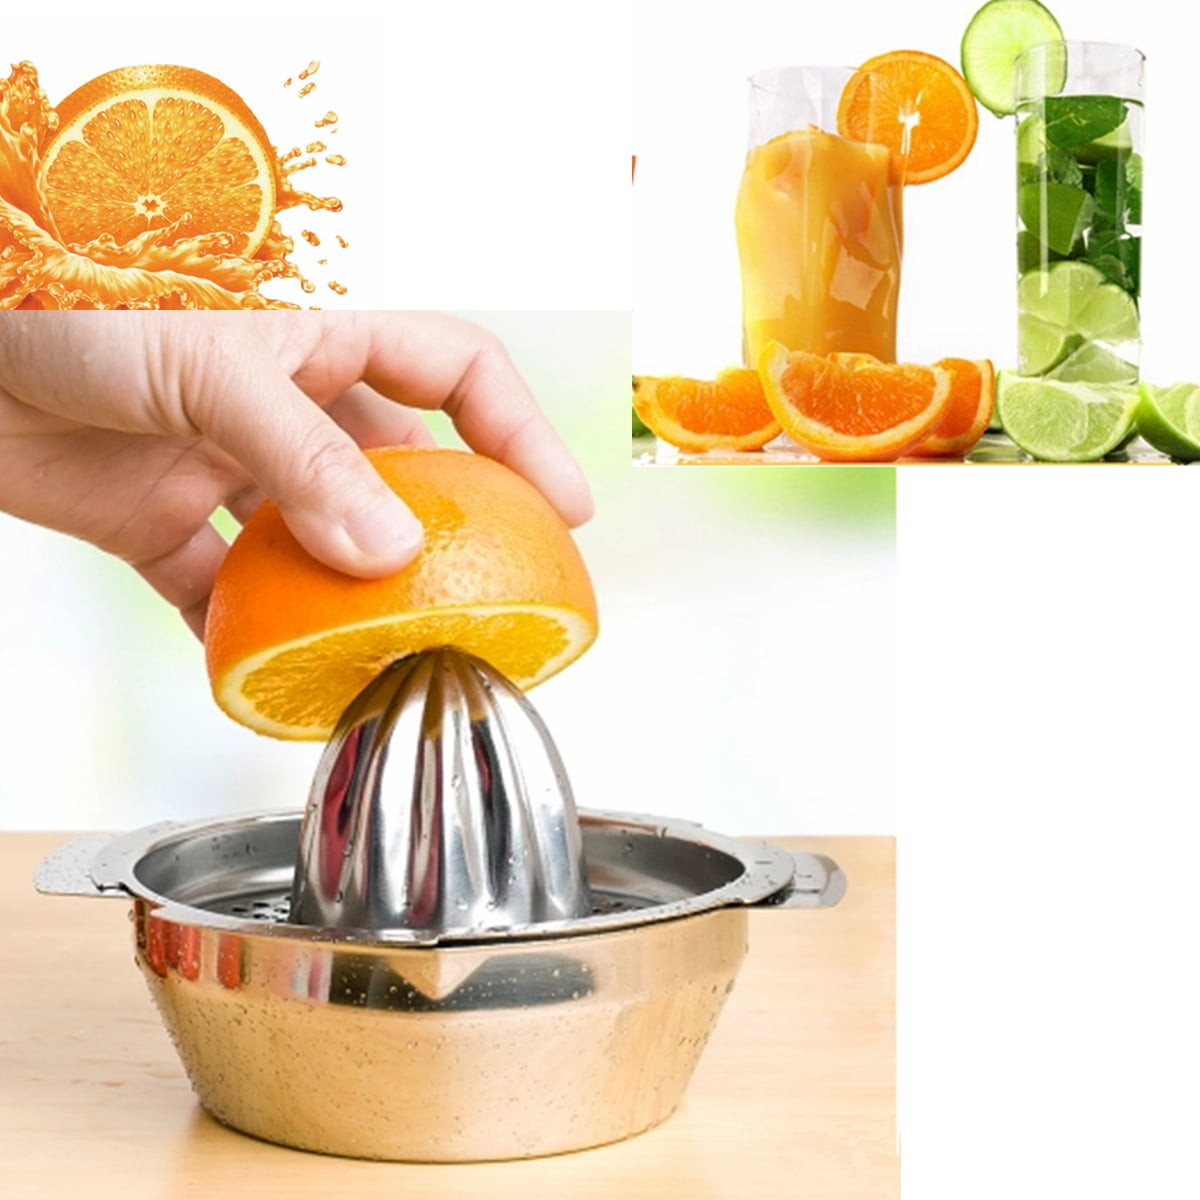 HB CO_ Dome Fruit Orange Lemon Juicer Home Kitchen Manual Press Citrus Squeezer 